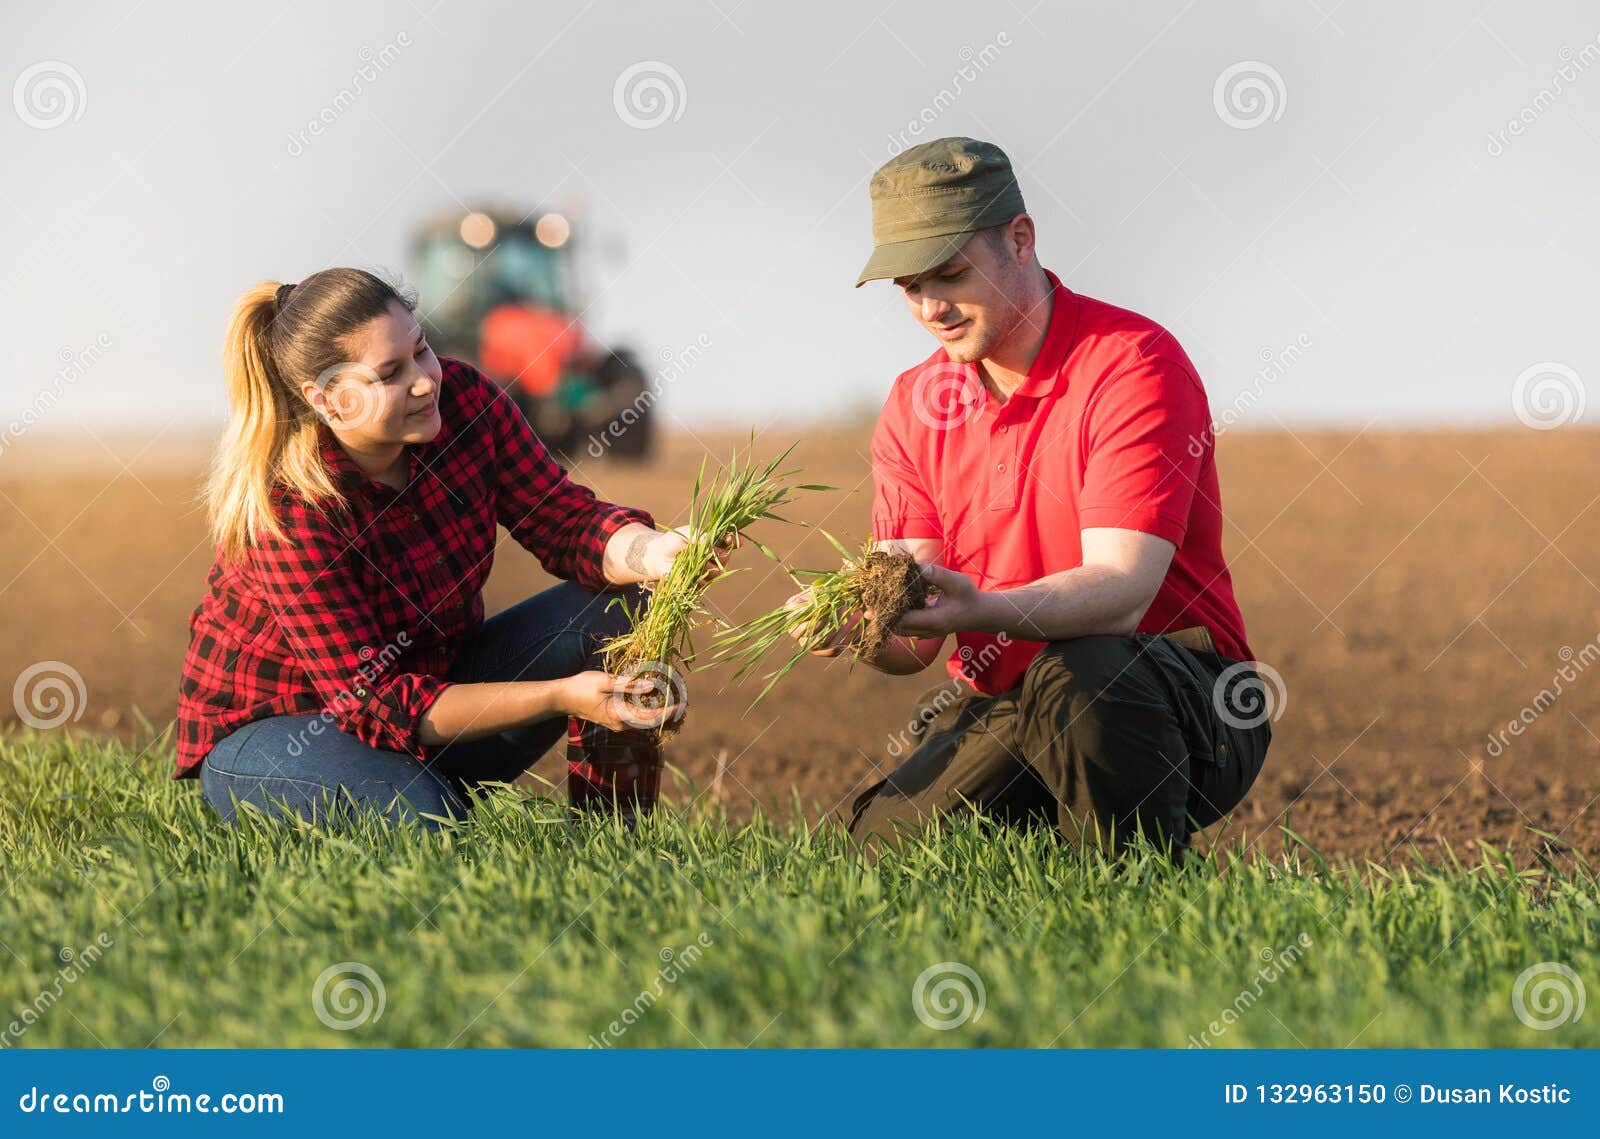 junge landwirte kennenlernen